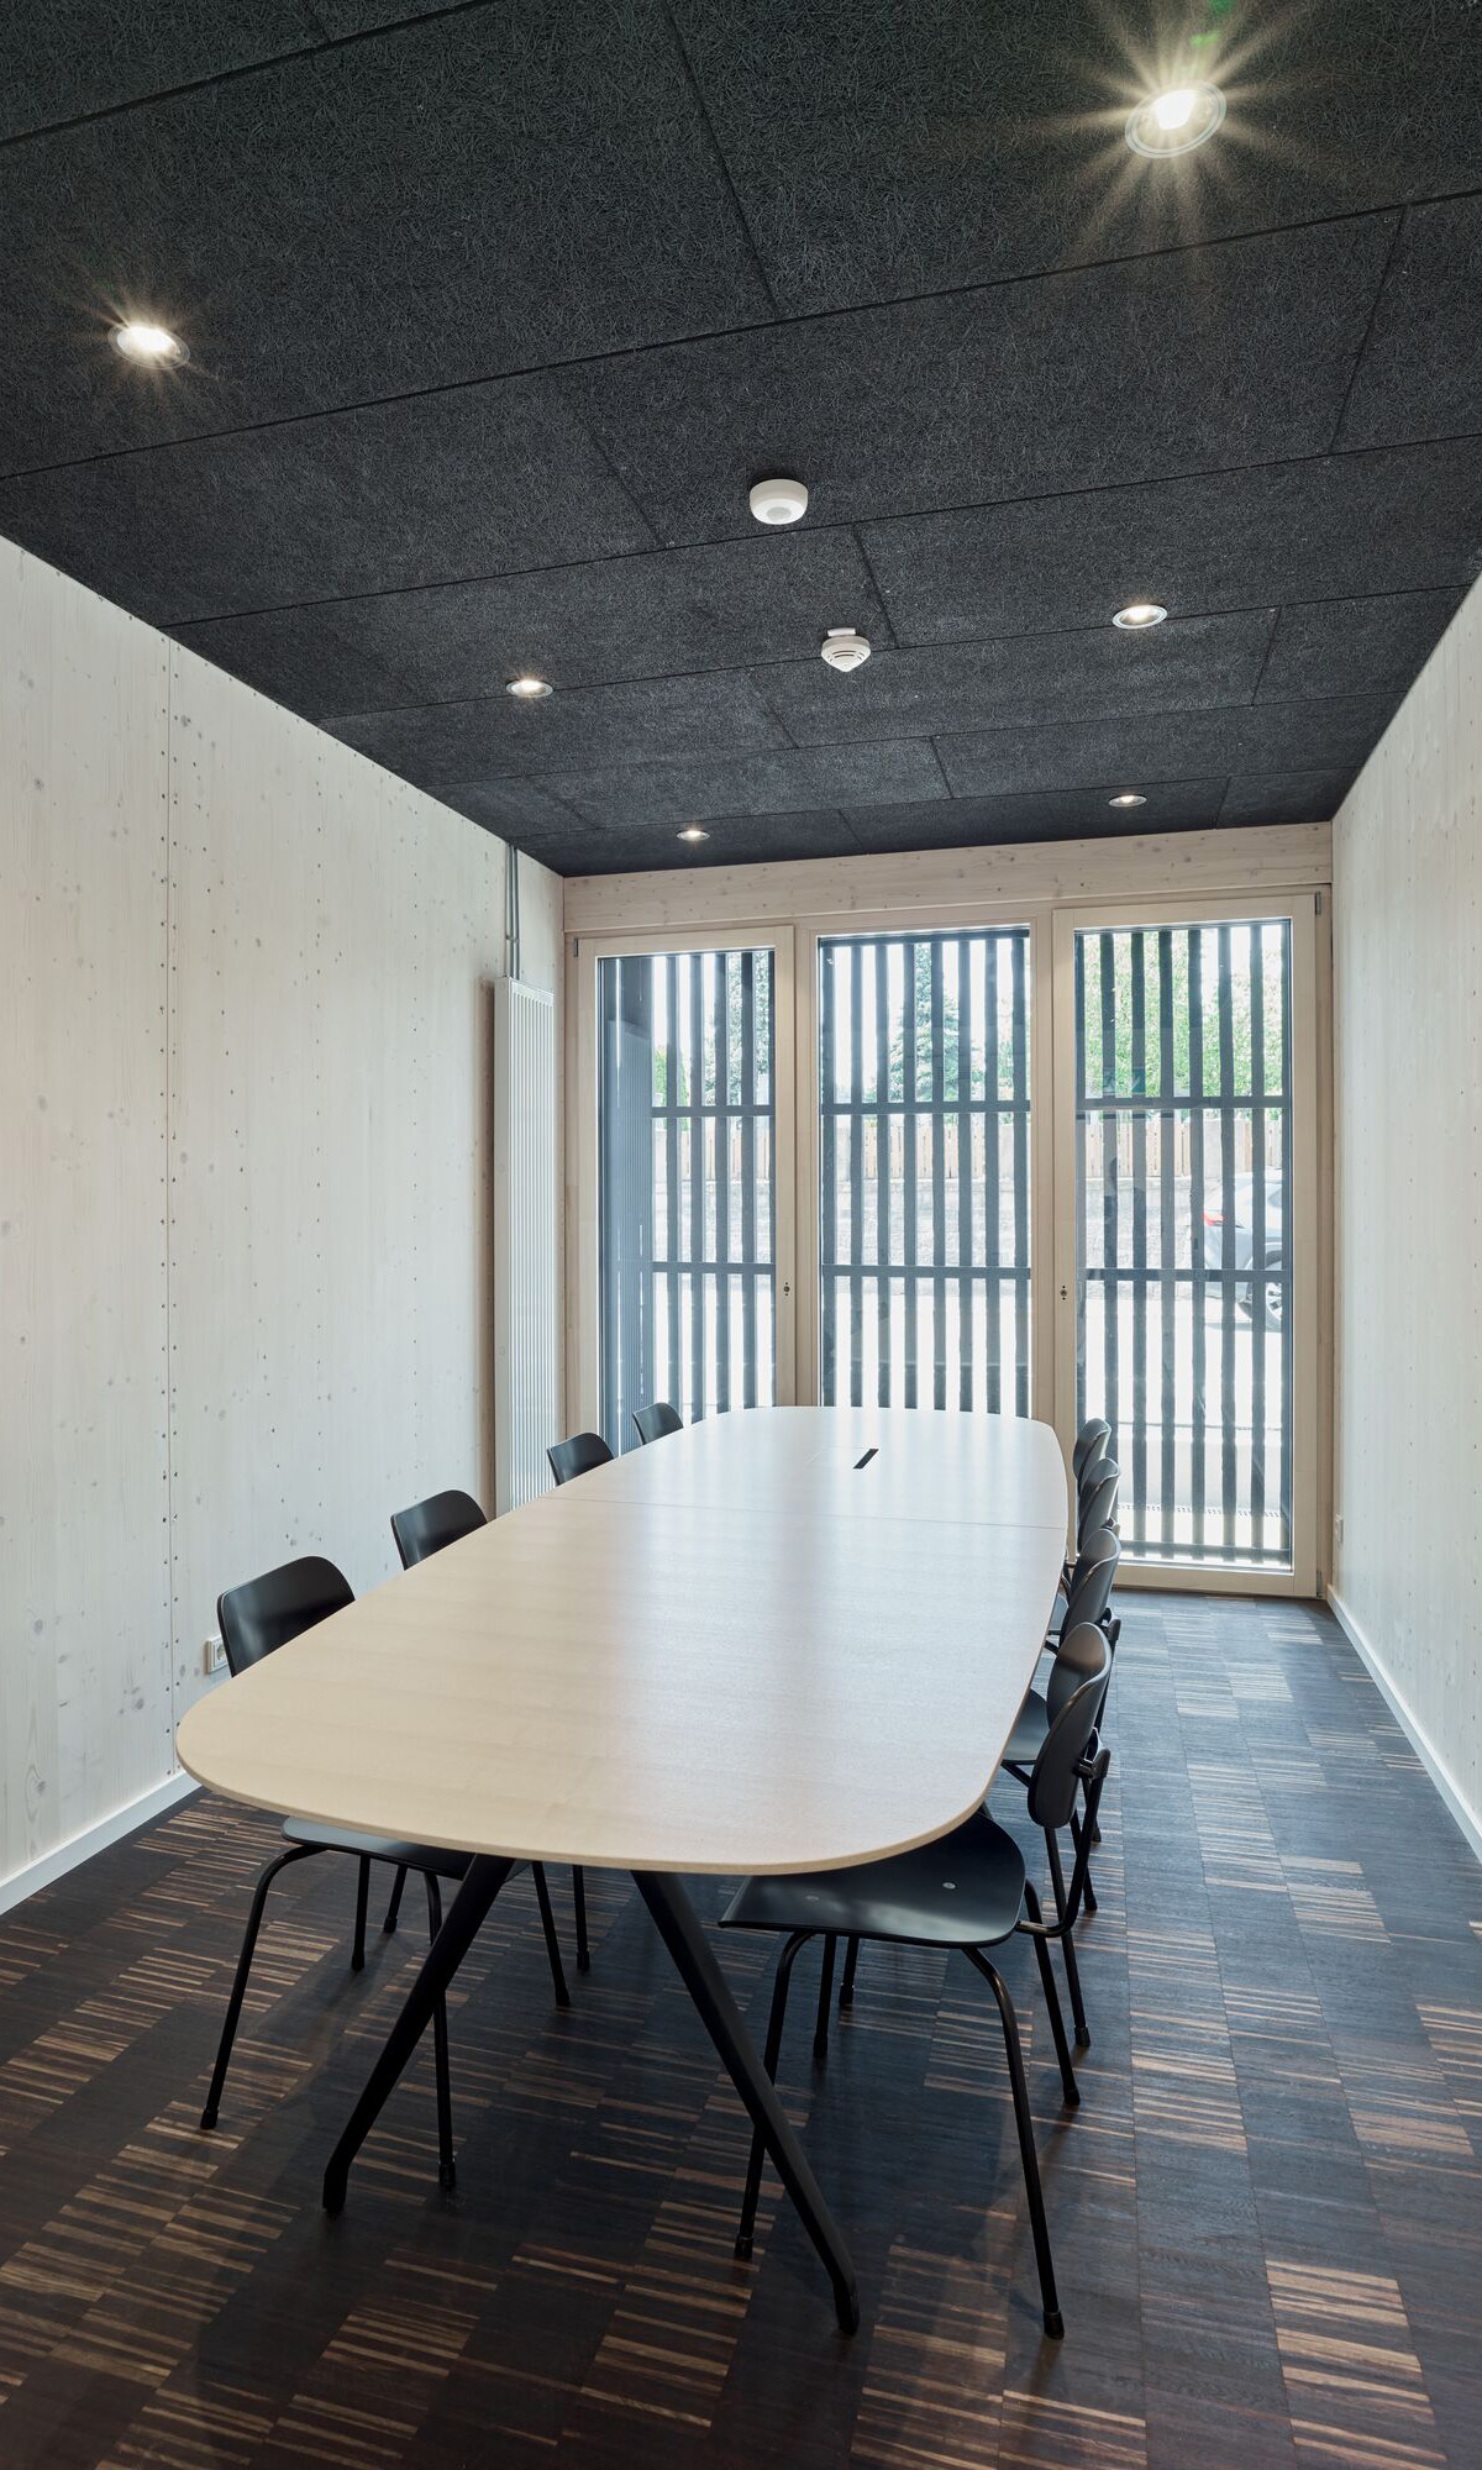 Vue d'une salle de réunion du bâtiment polyvalent de Dudelange en format portrait